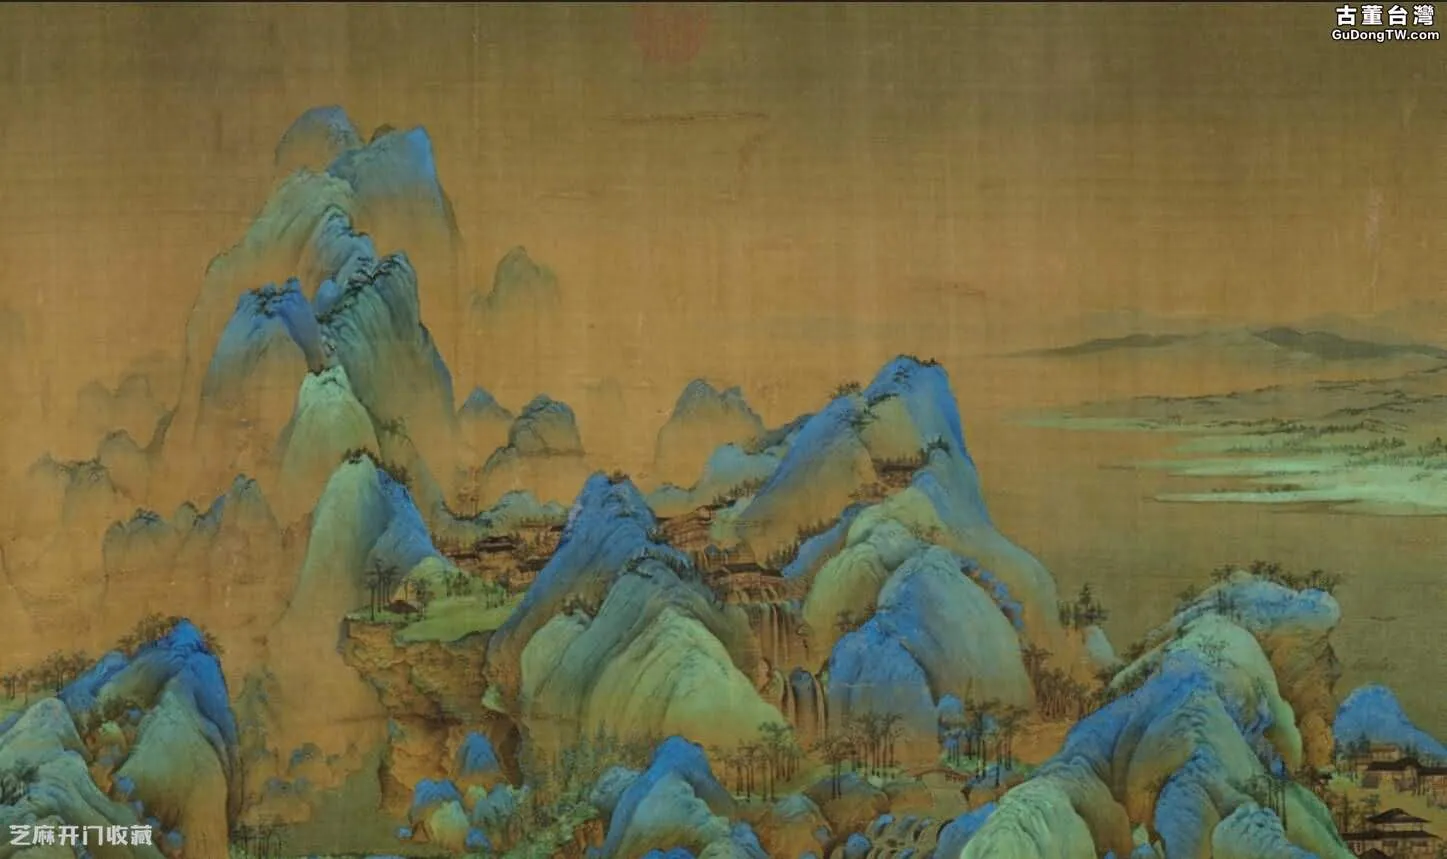 《千里江山圖》藝術手法及表現的內容